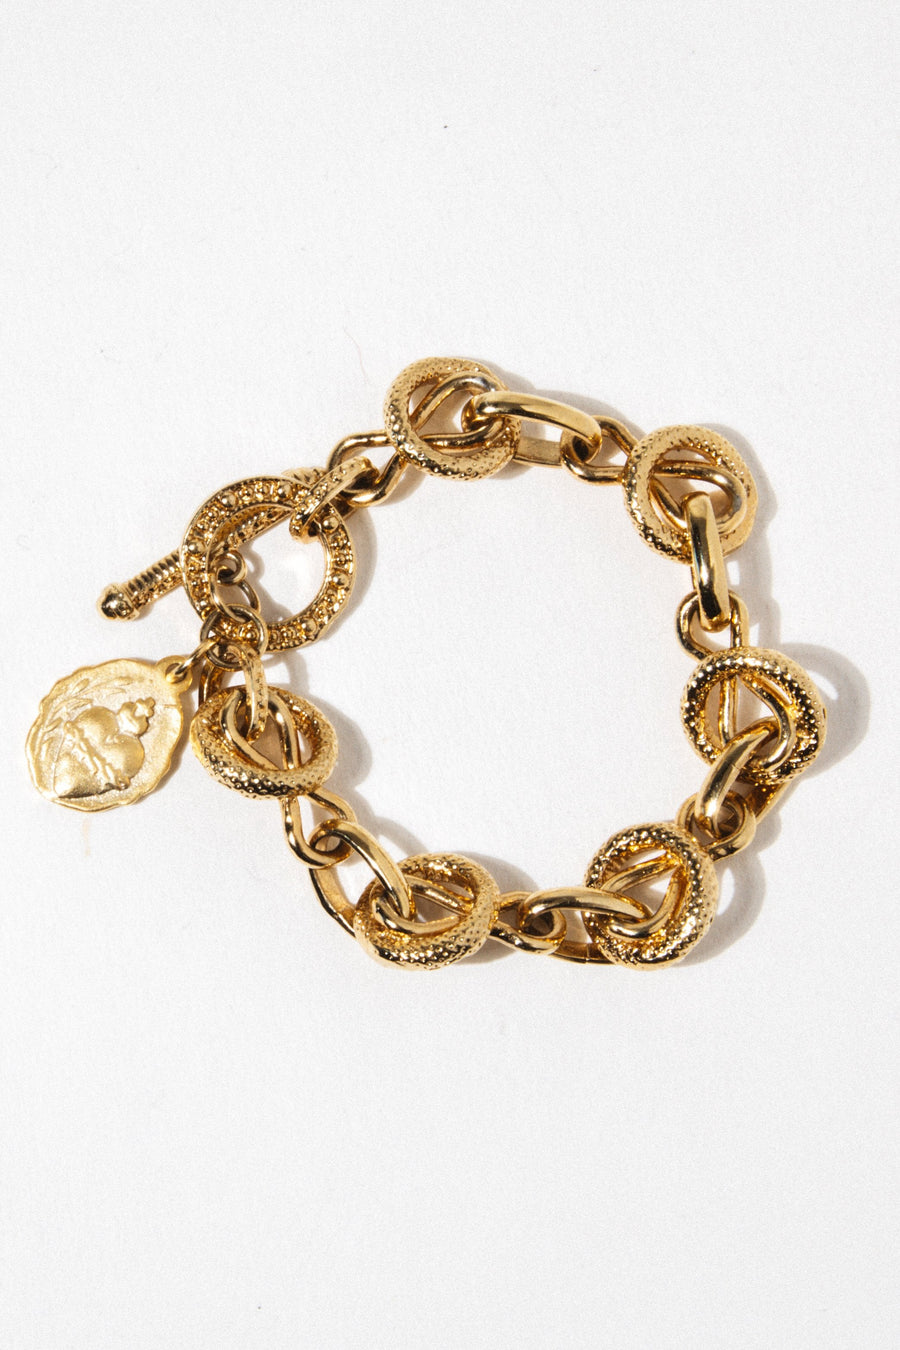 Goddess Jewelry Gold Italiana Bracelet